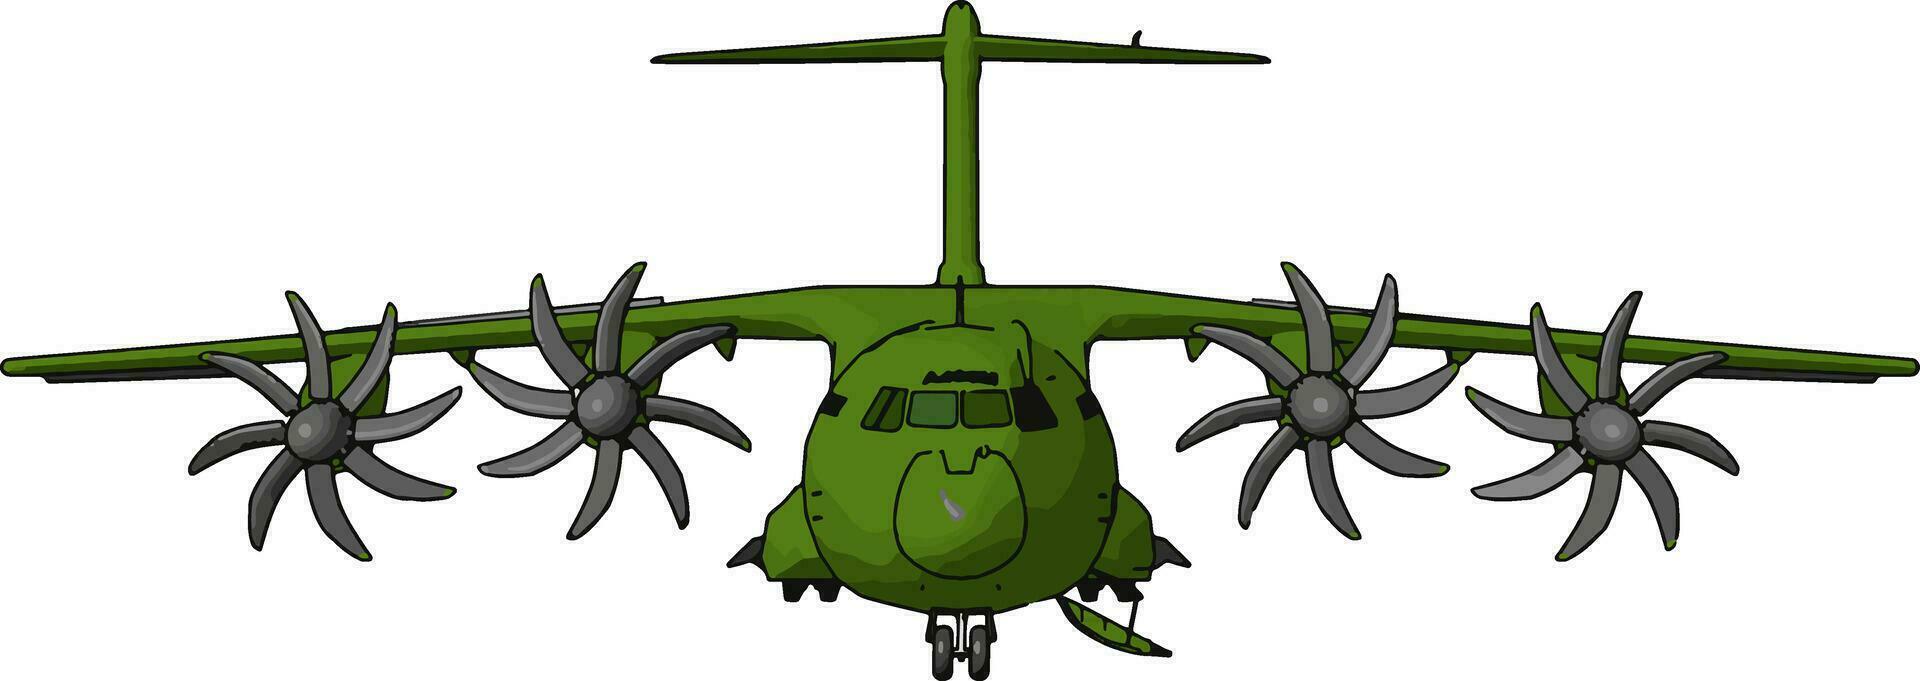 Herkules- historisch Militär- Flugzeug Vektor oder Farbe Illustration